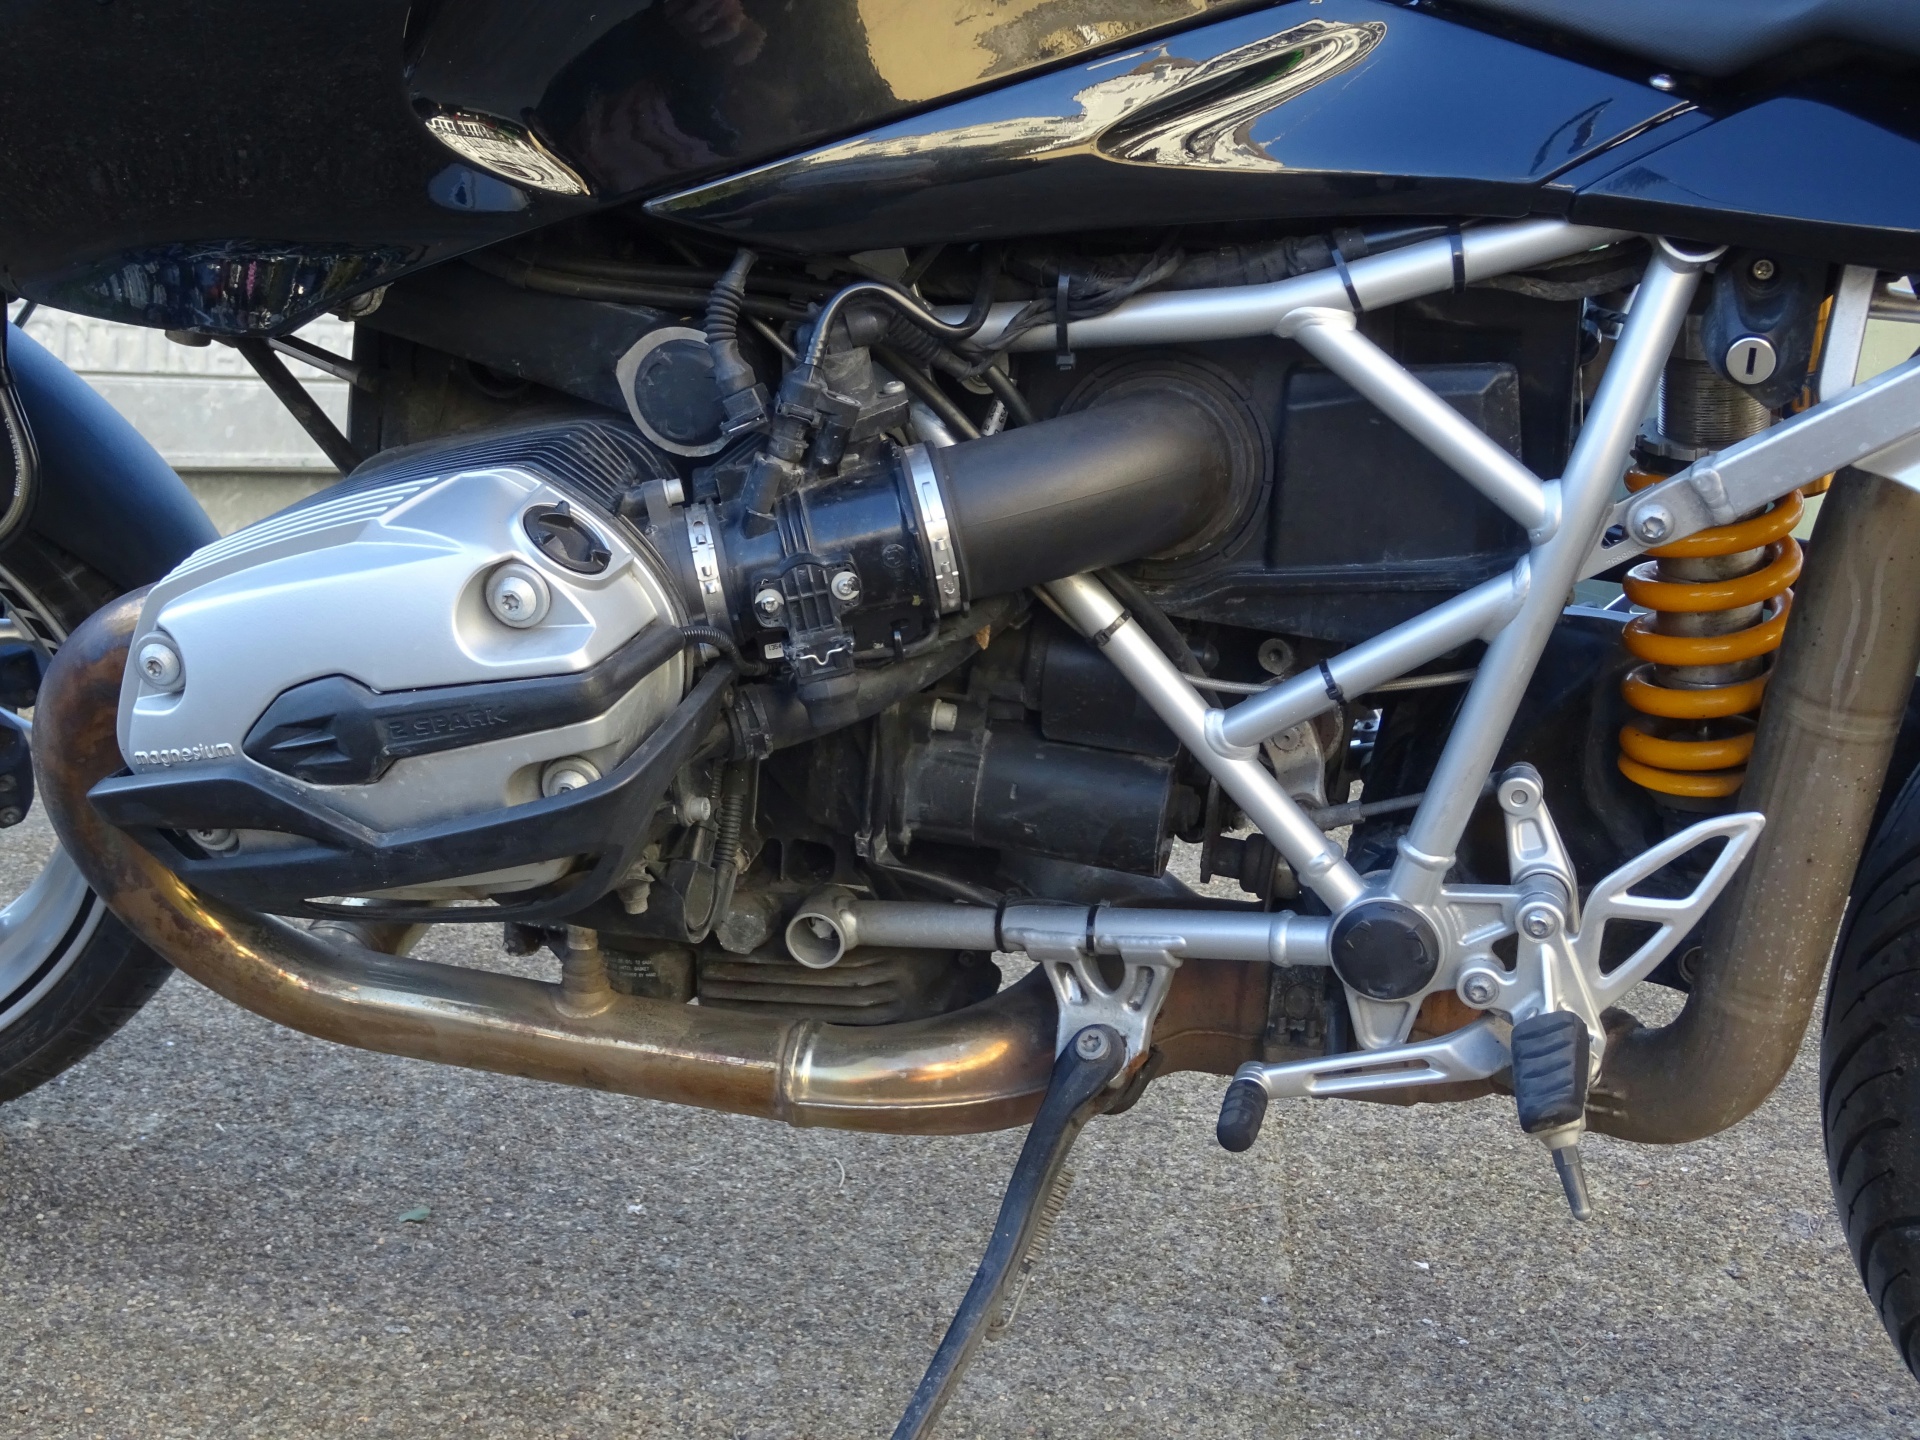 BMW R1200S Motorcycle Engine Vänster